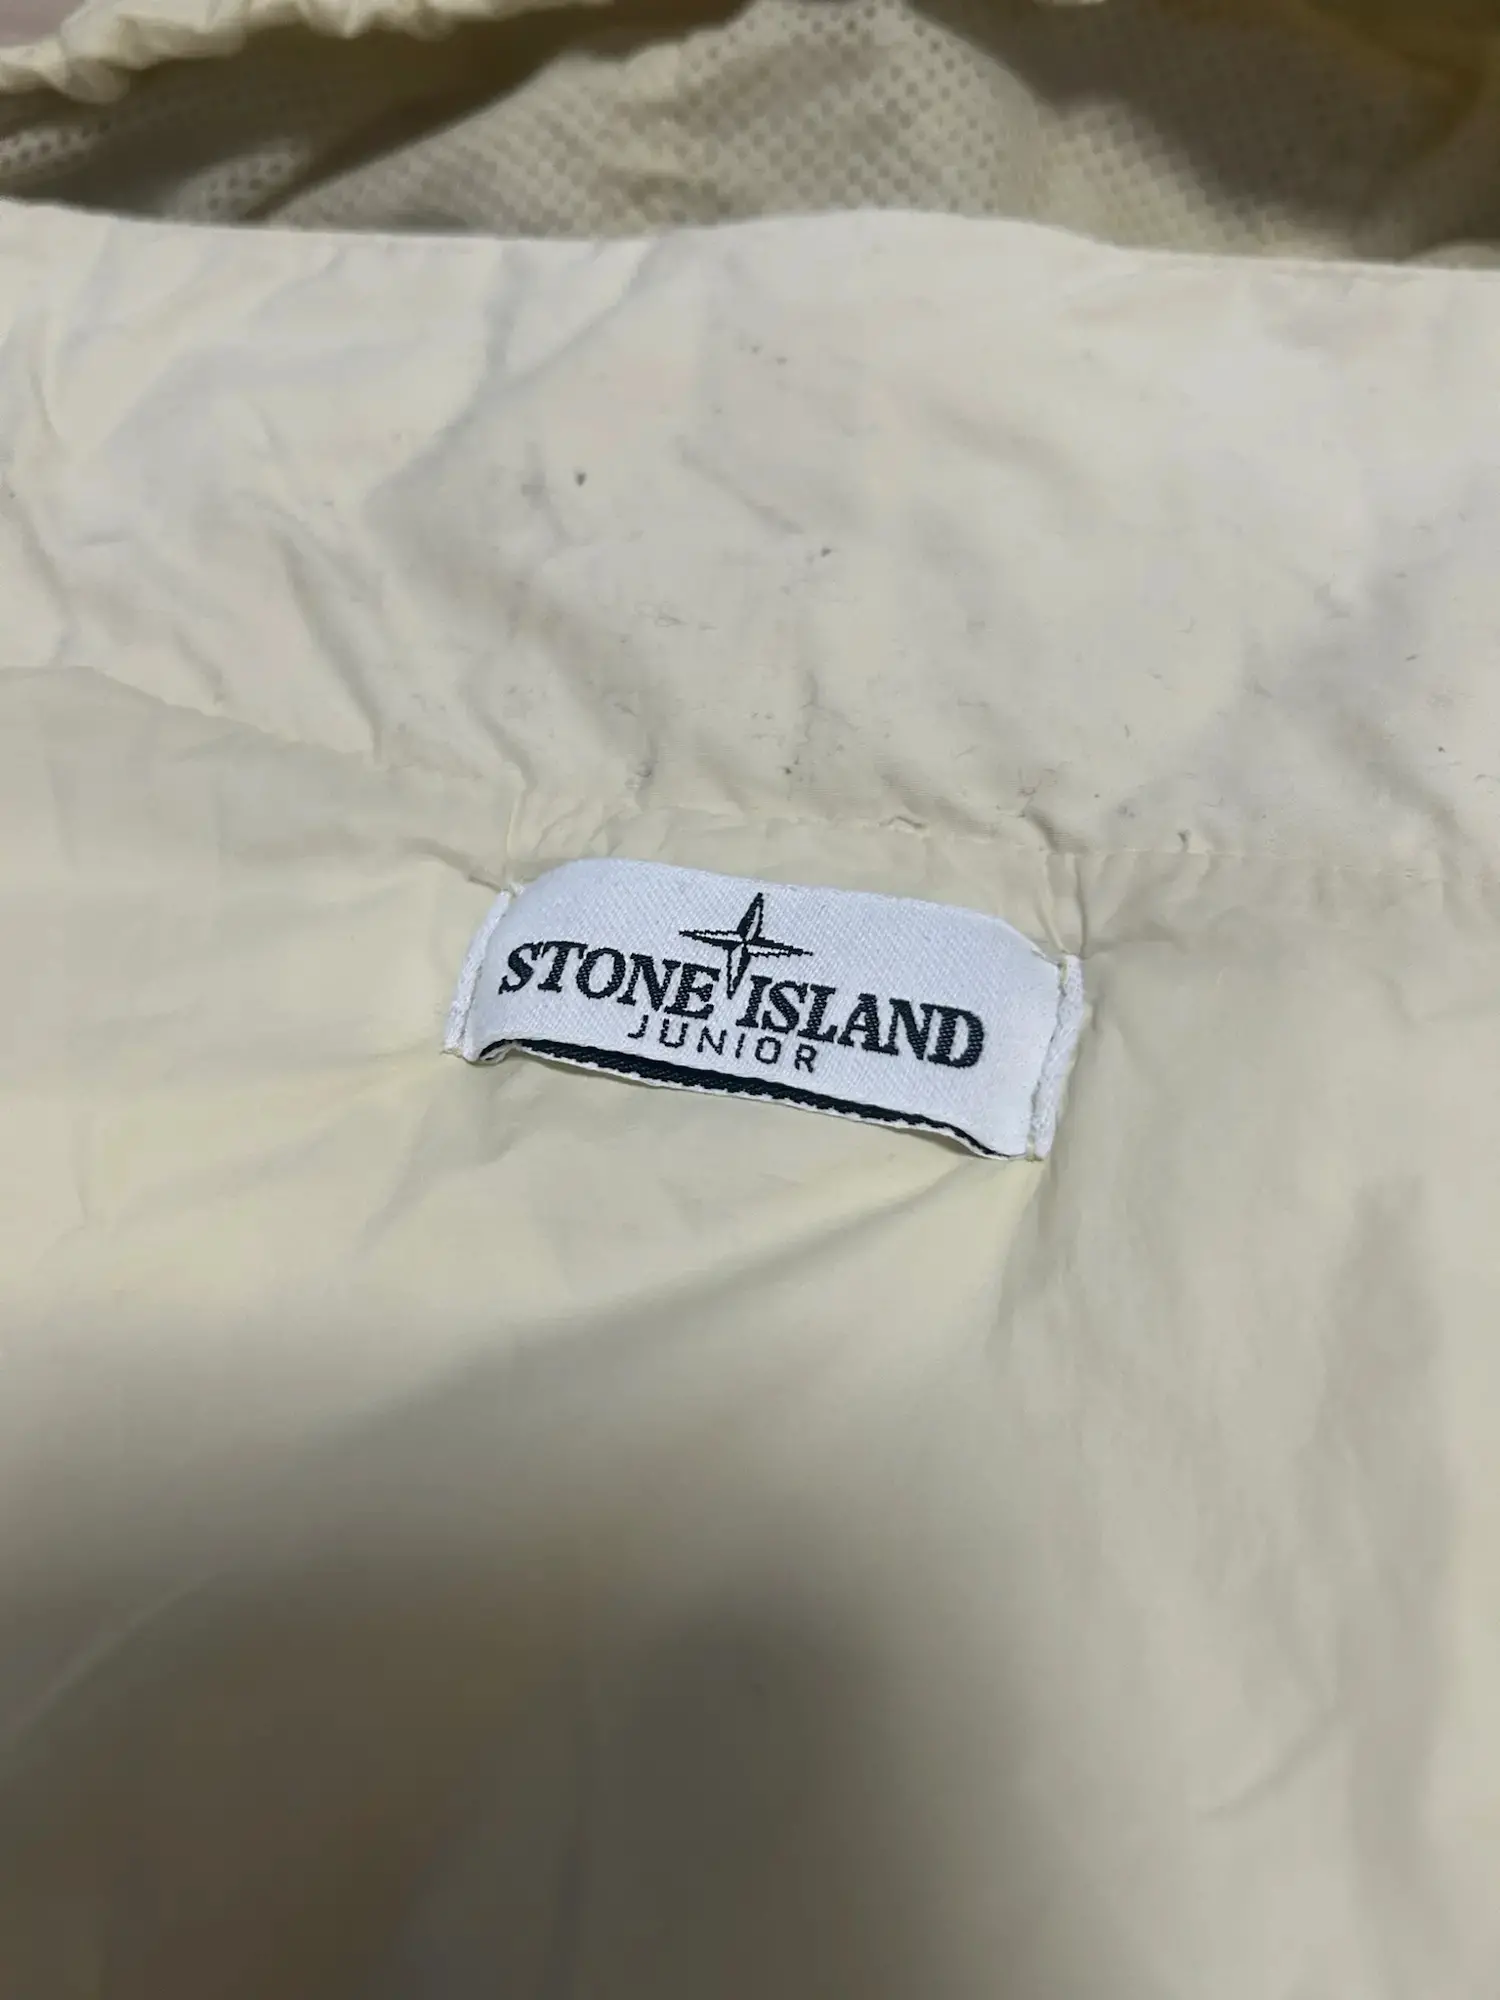 Stone Island vest